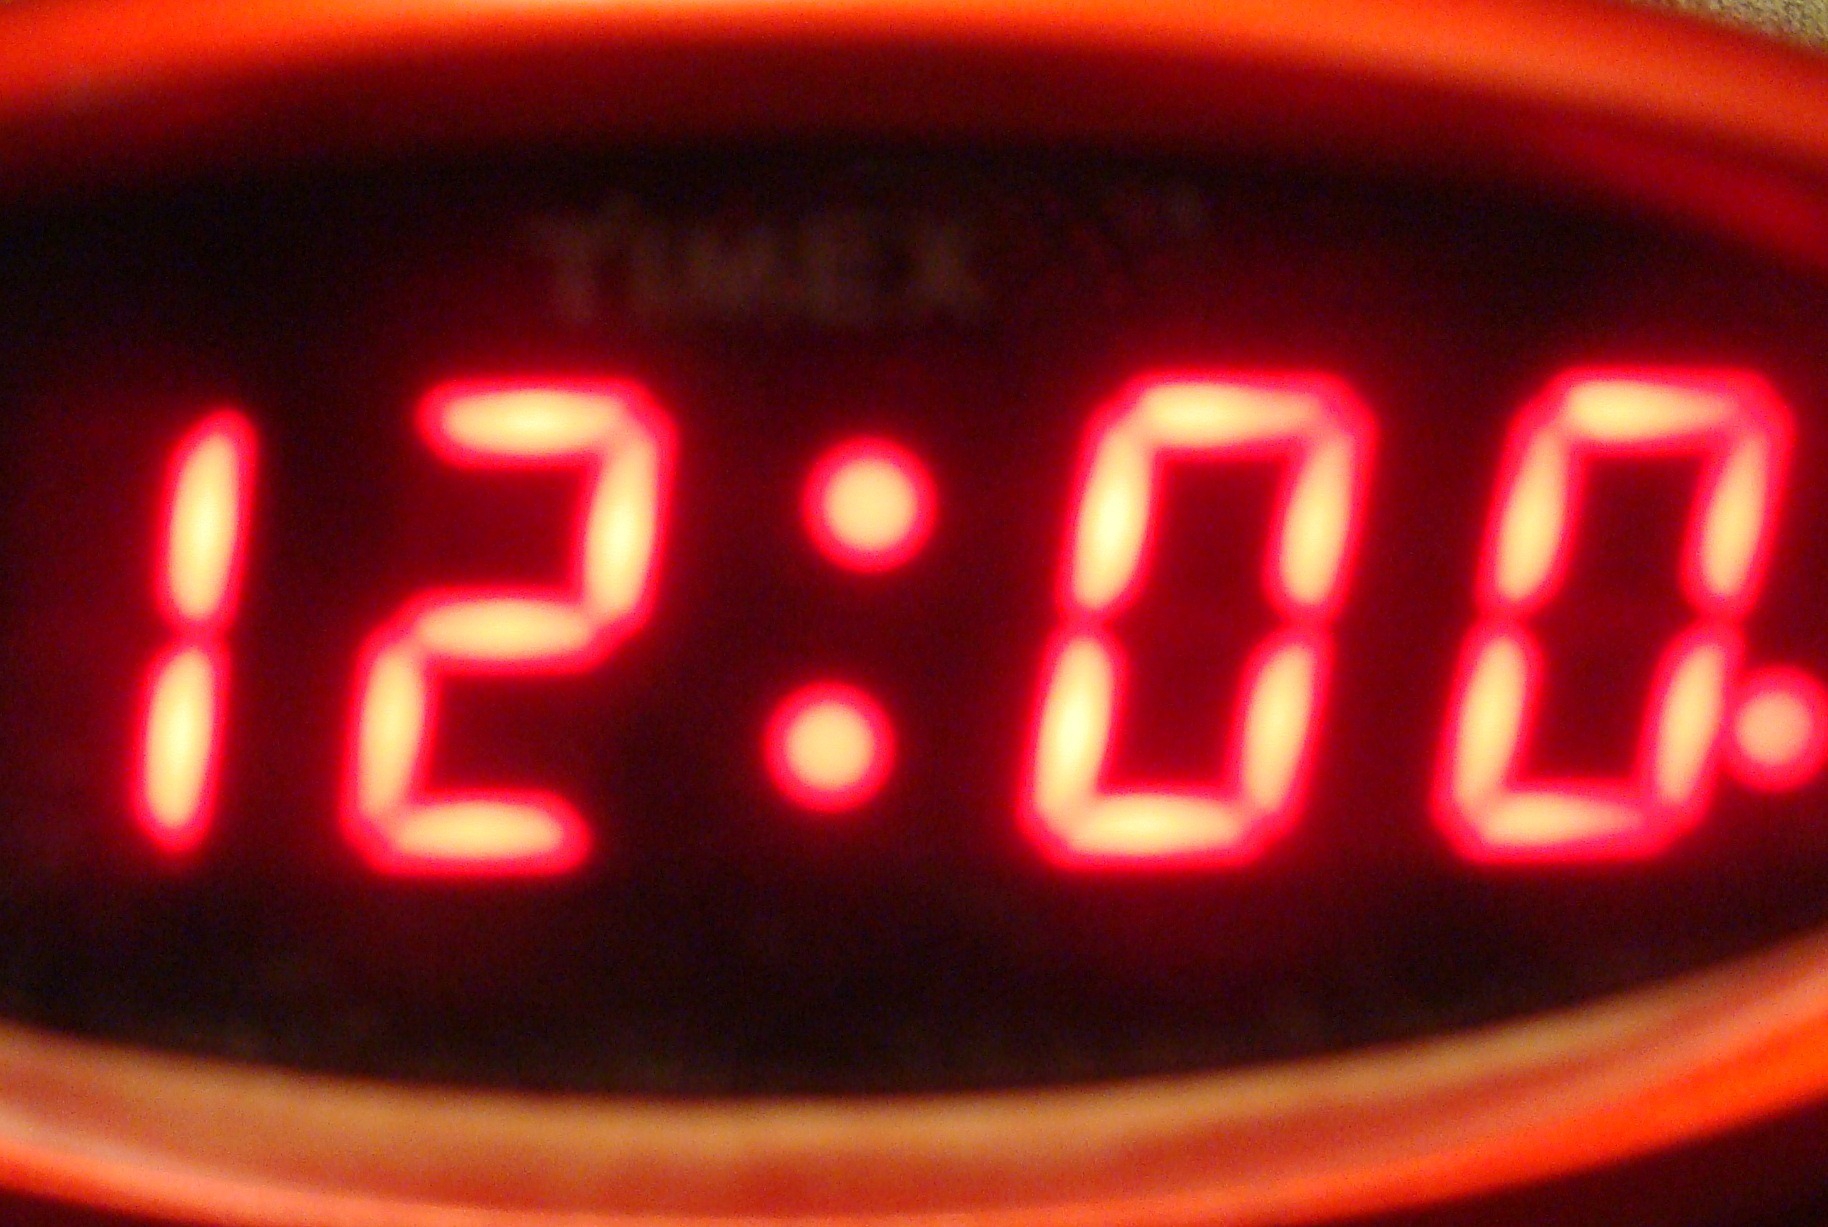 12 00 музыка. Электронные часы 12 00. Часы показывают 12 00. Электронные часы полночь. Электронные часы 12 часов ночи.